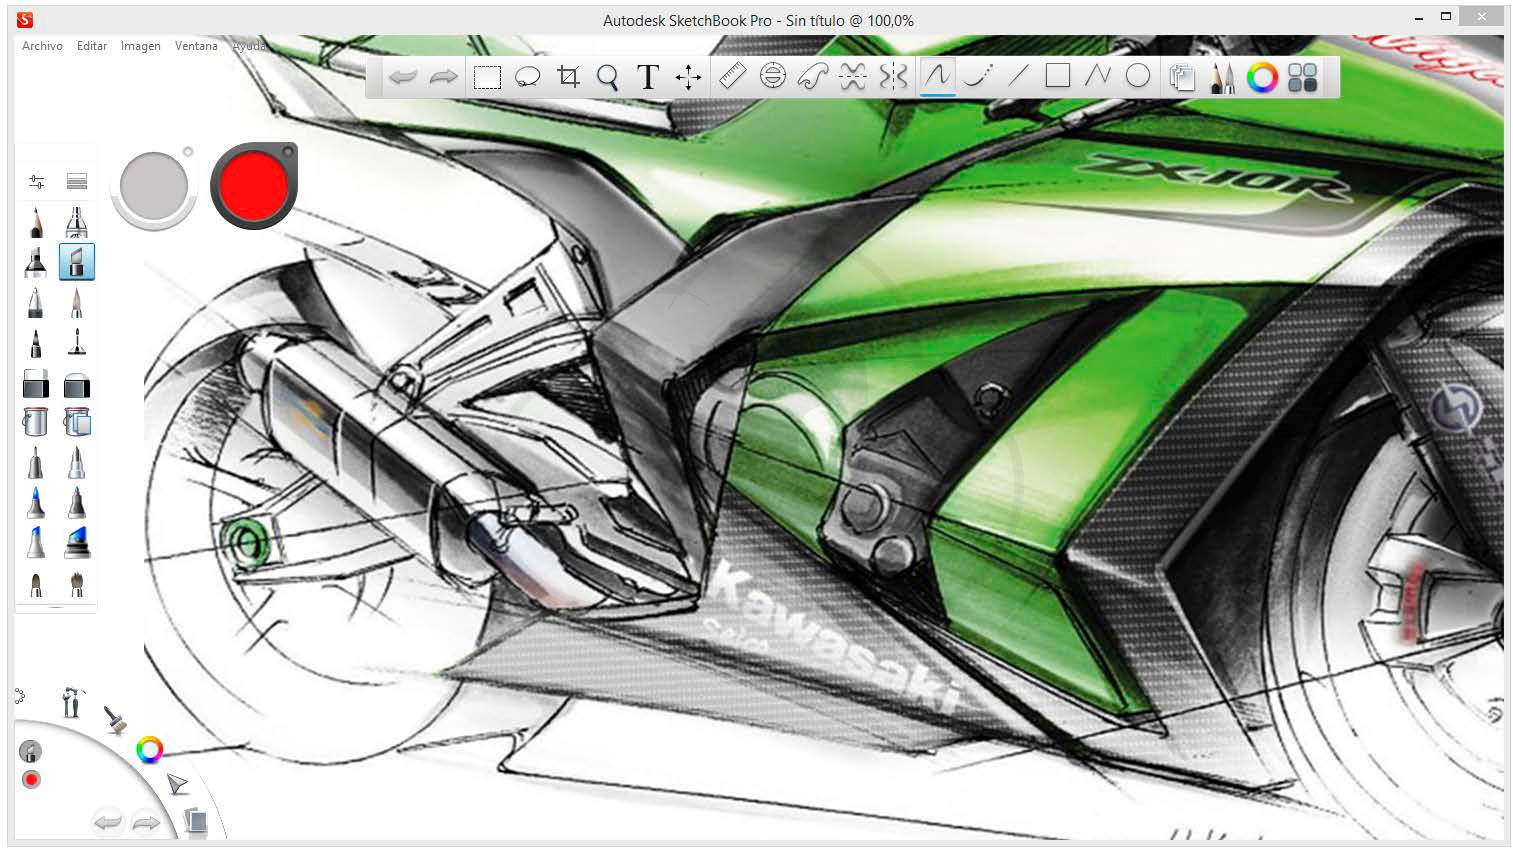 Autodesk Sketchbook Pro Mod Apk Unlocked الصور Joansmurder Info